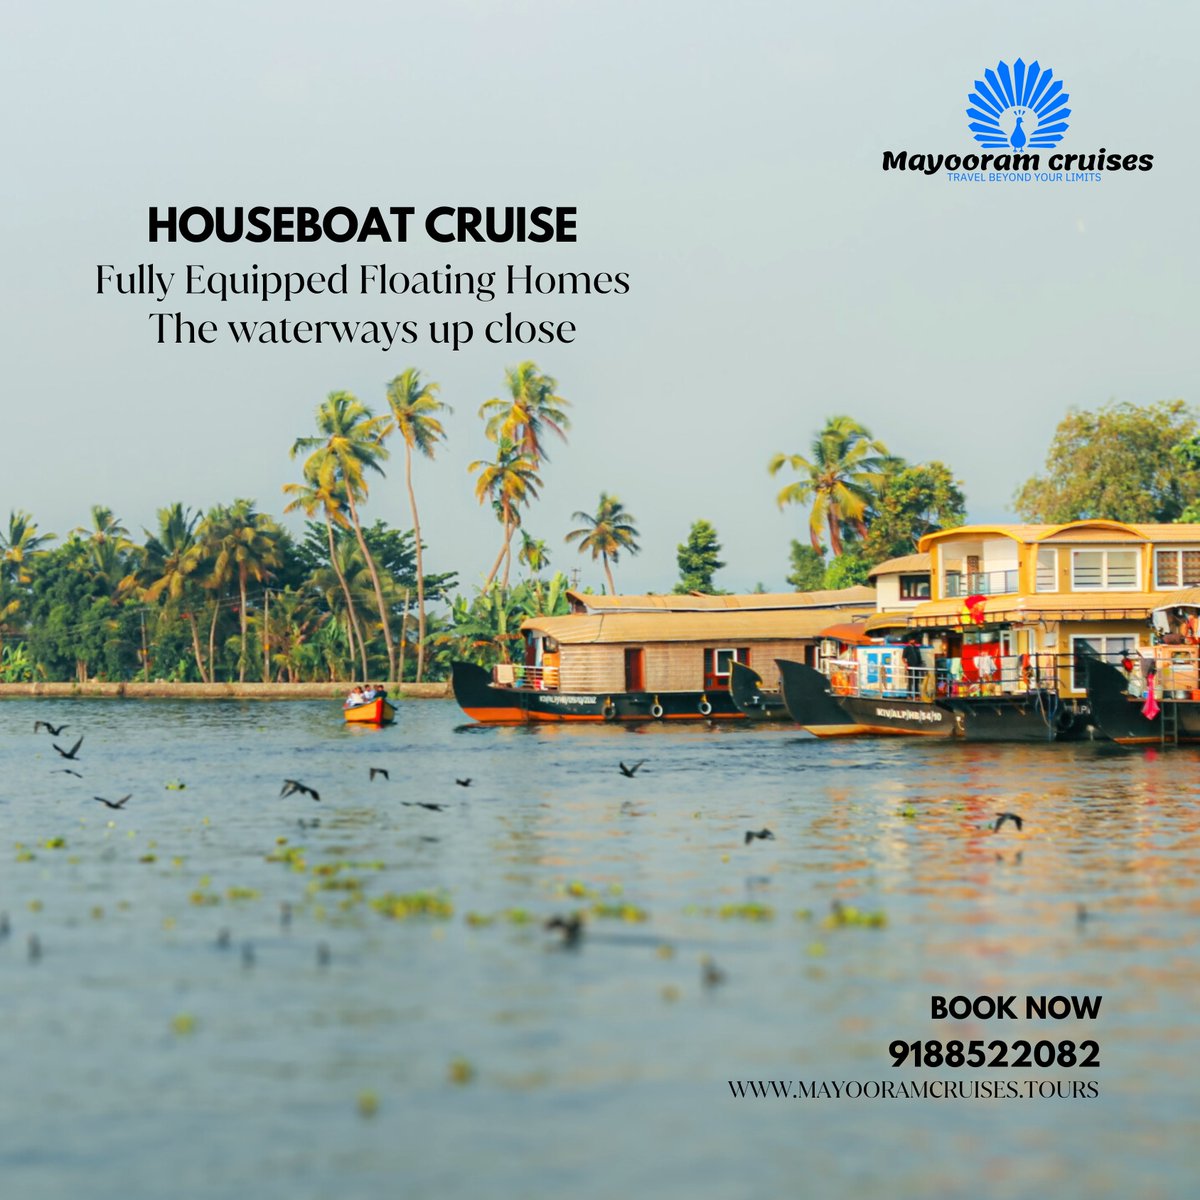 Unique beauty of Backwaters🏄
BOOKINGS: 9188522082
mayooramcruises.tours
#houseboat #houseboats #houseboatlife #houseboating #houseboatliving #kerala #keralagram #keralatourism #keralaattraction #keralagodsowncountry #KeralaNews #keralatourism #keralagodsowncountry  #alleppey